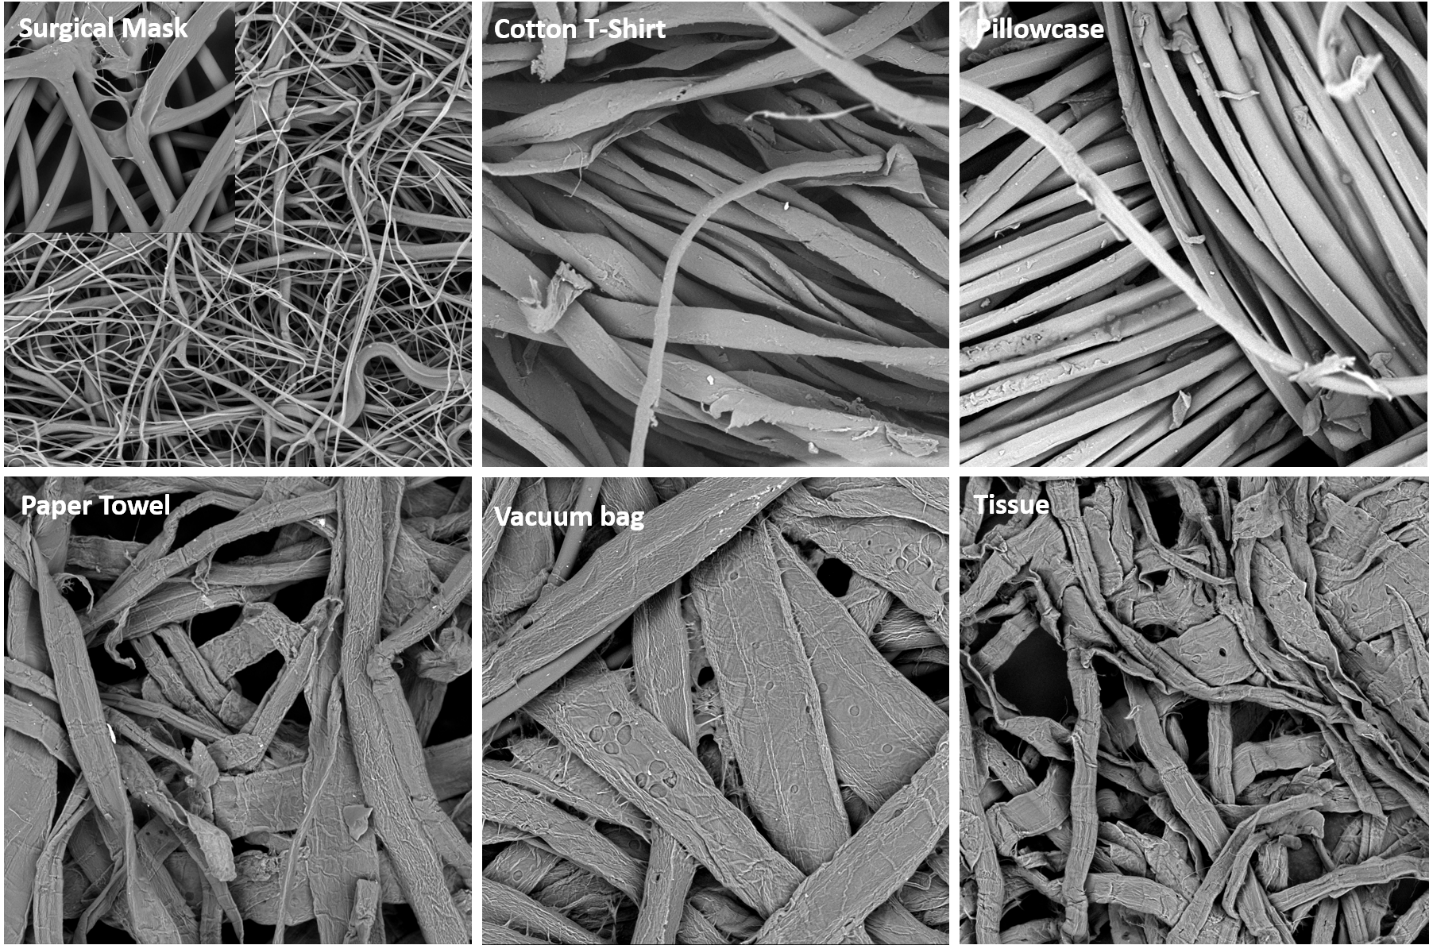 Phenom desktop SEM images of fiber structure comparison of mask material imaged